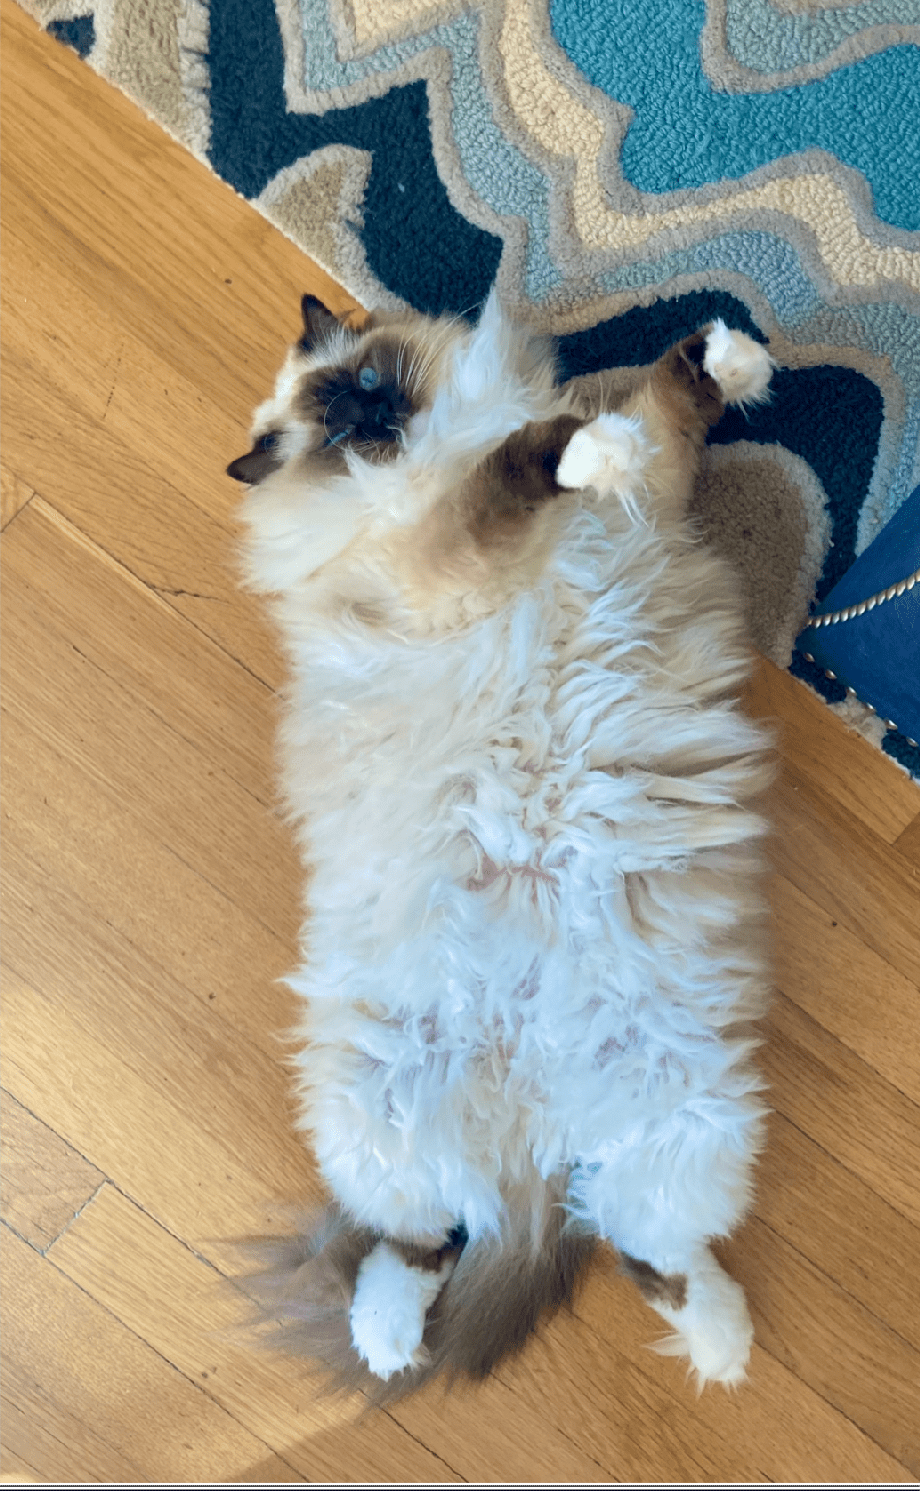 Snowy: A Grumpy Babushka, Fashion Icon, and Feline Foodie – A Tale of a Fashionable Cat